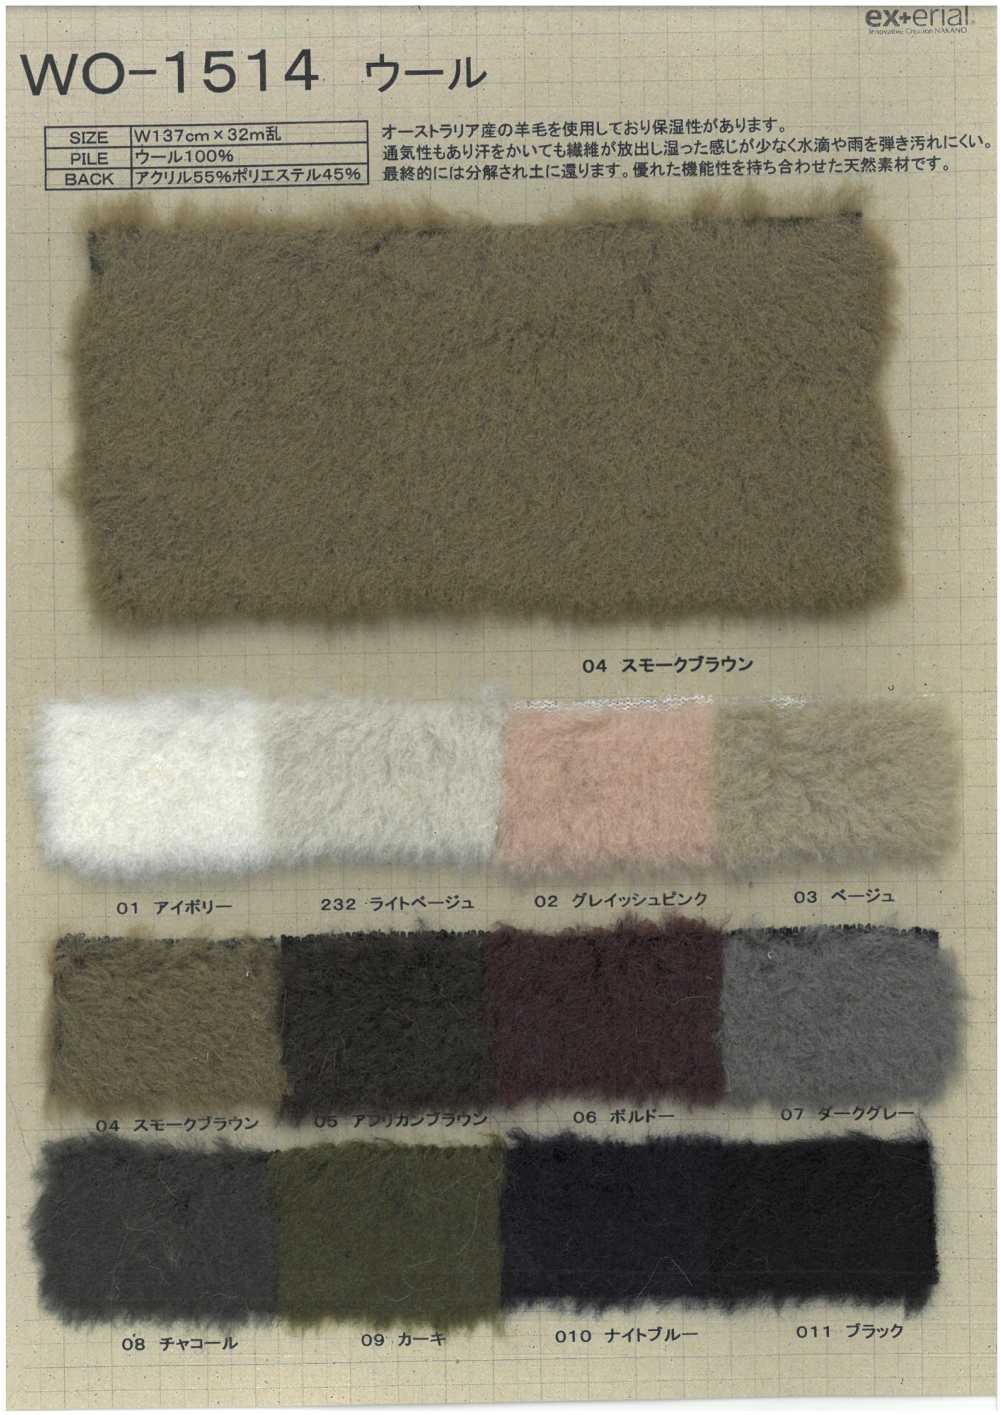 WO-1514 Pelliccia Artigianale [Lana Di Pecora][Tessile / Tessuto] Industria Delle Magliette A Nakano